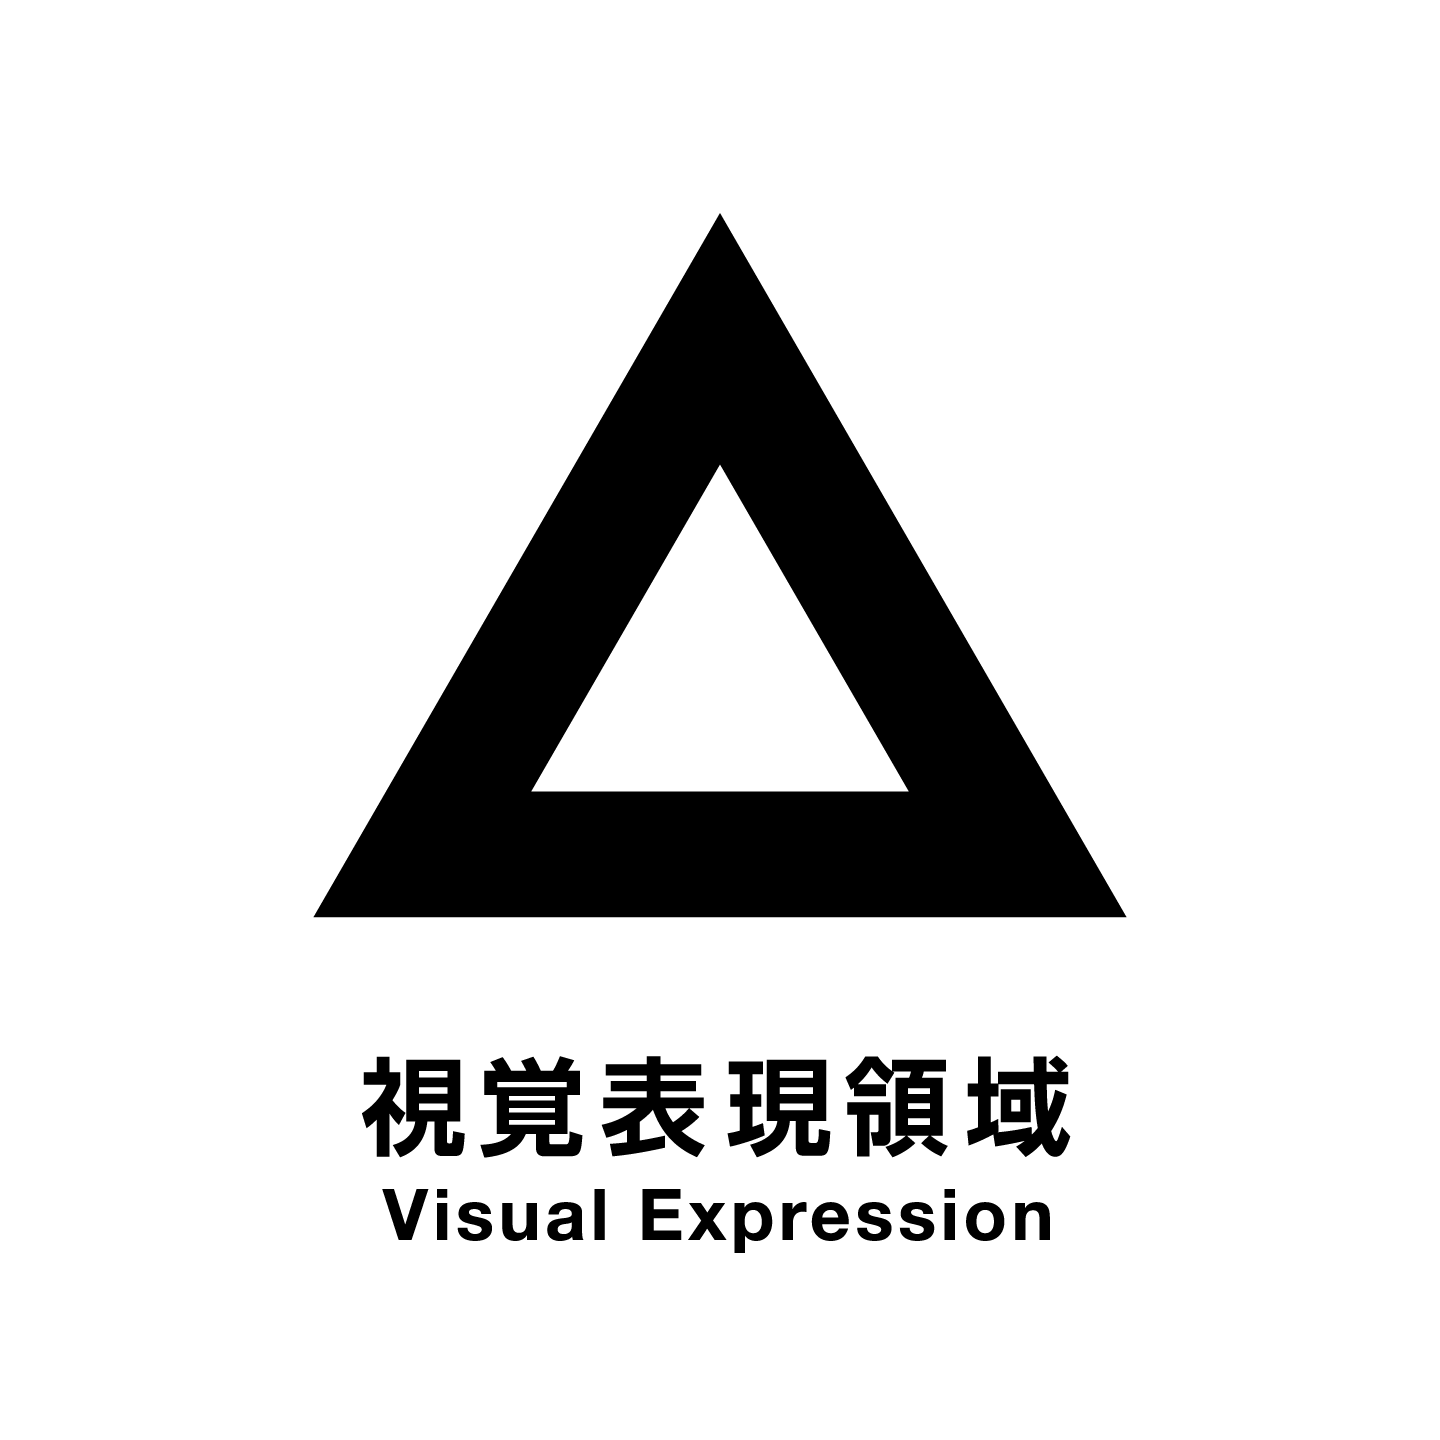 視覚表現領域 Visual Expression